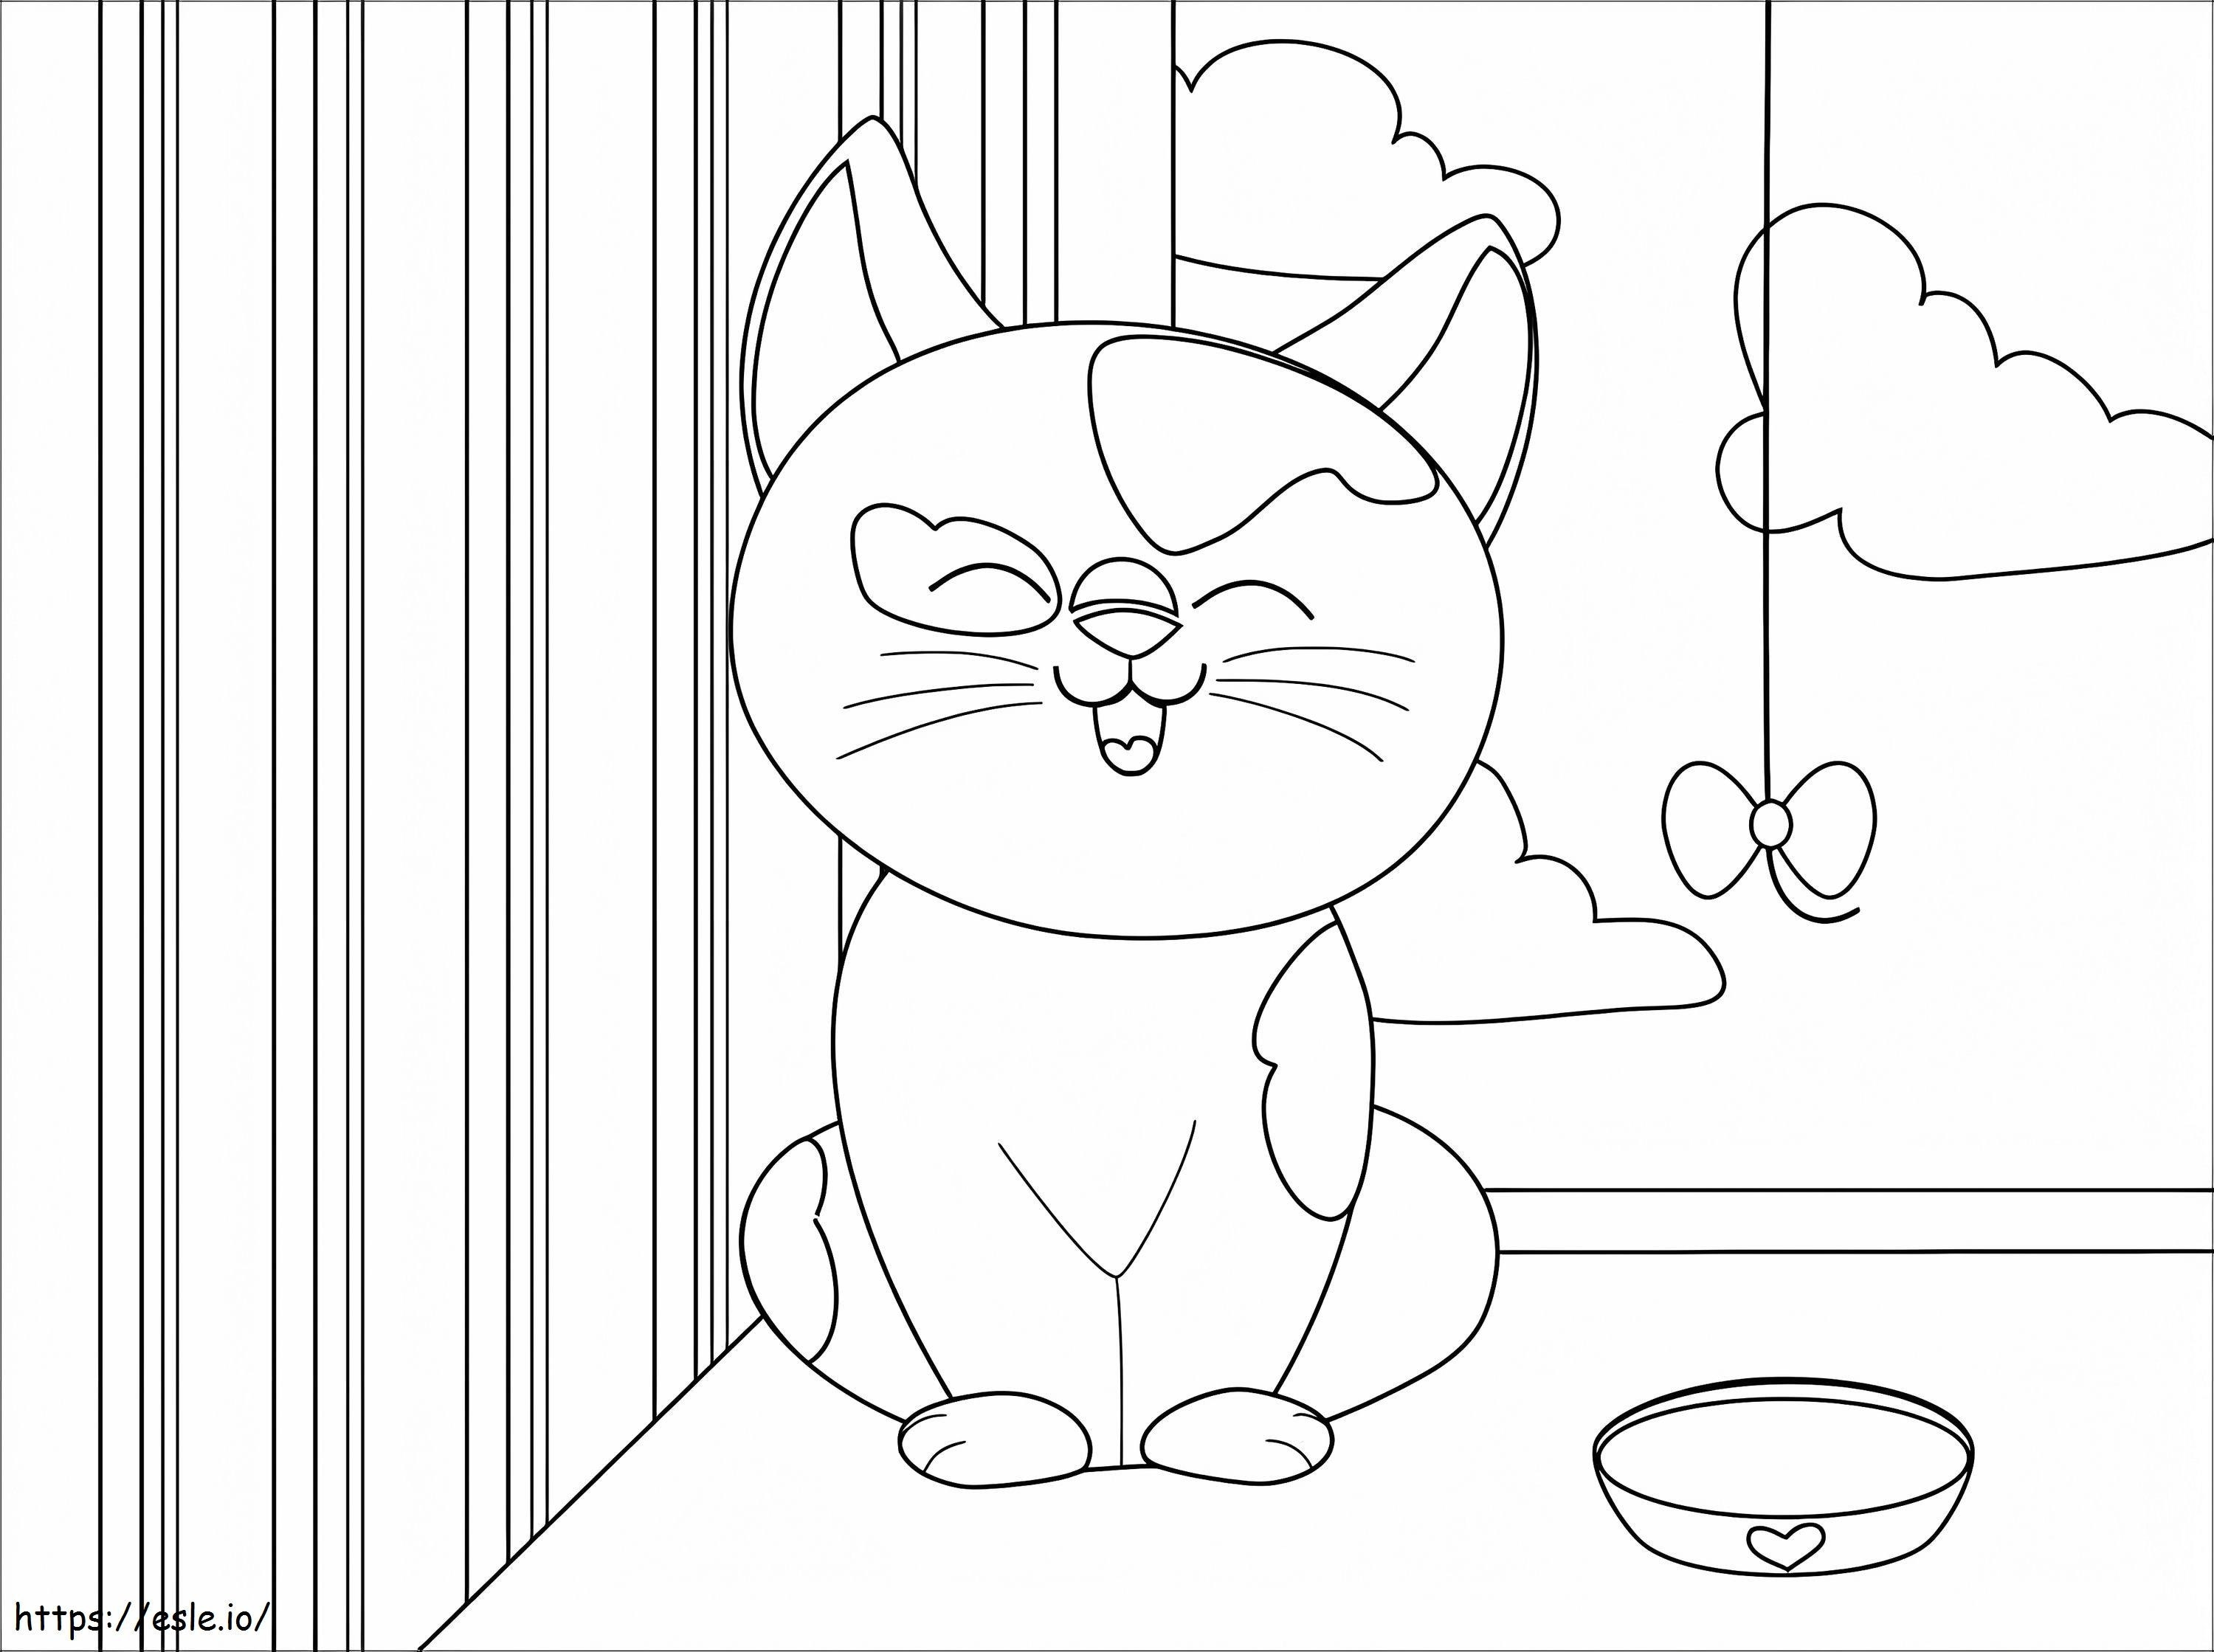 Coloriage Le chat est heureux à imprimer dessin